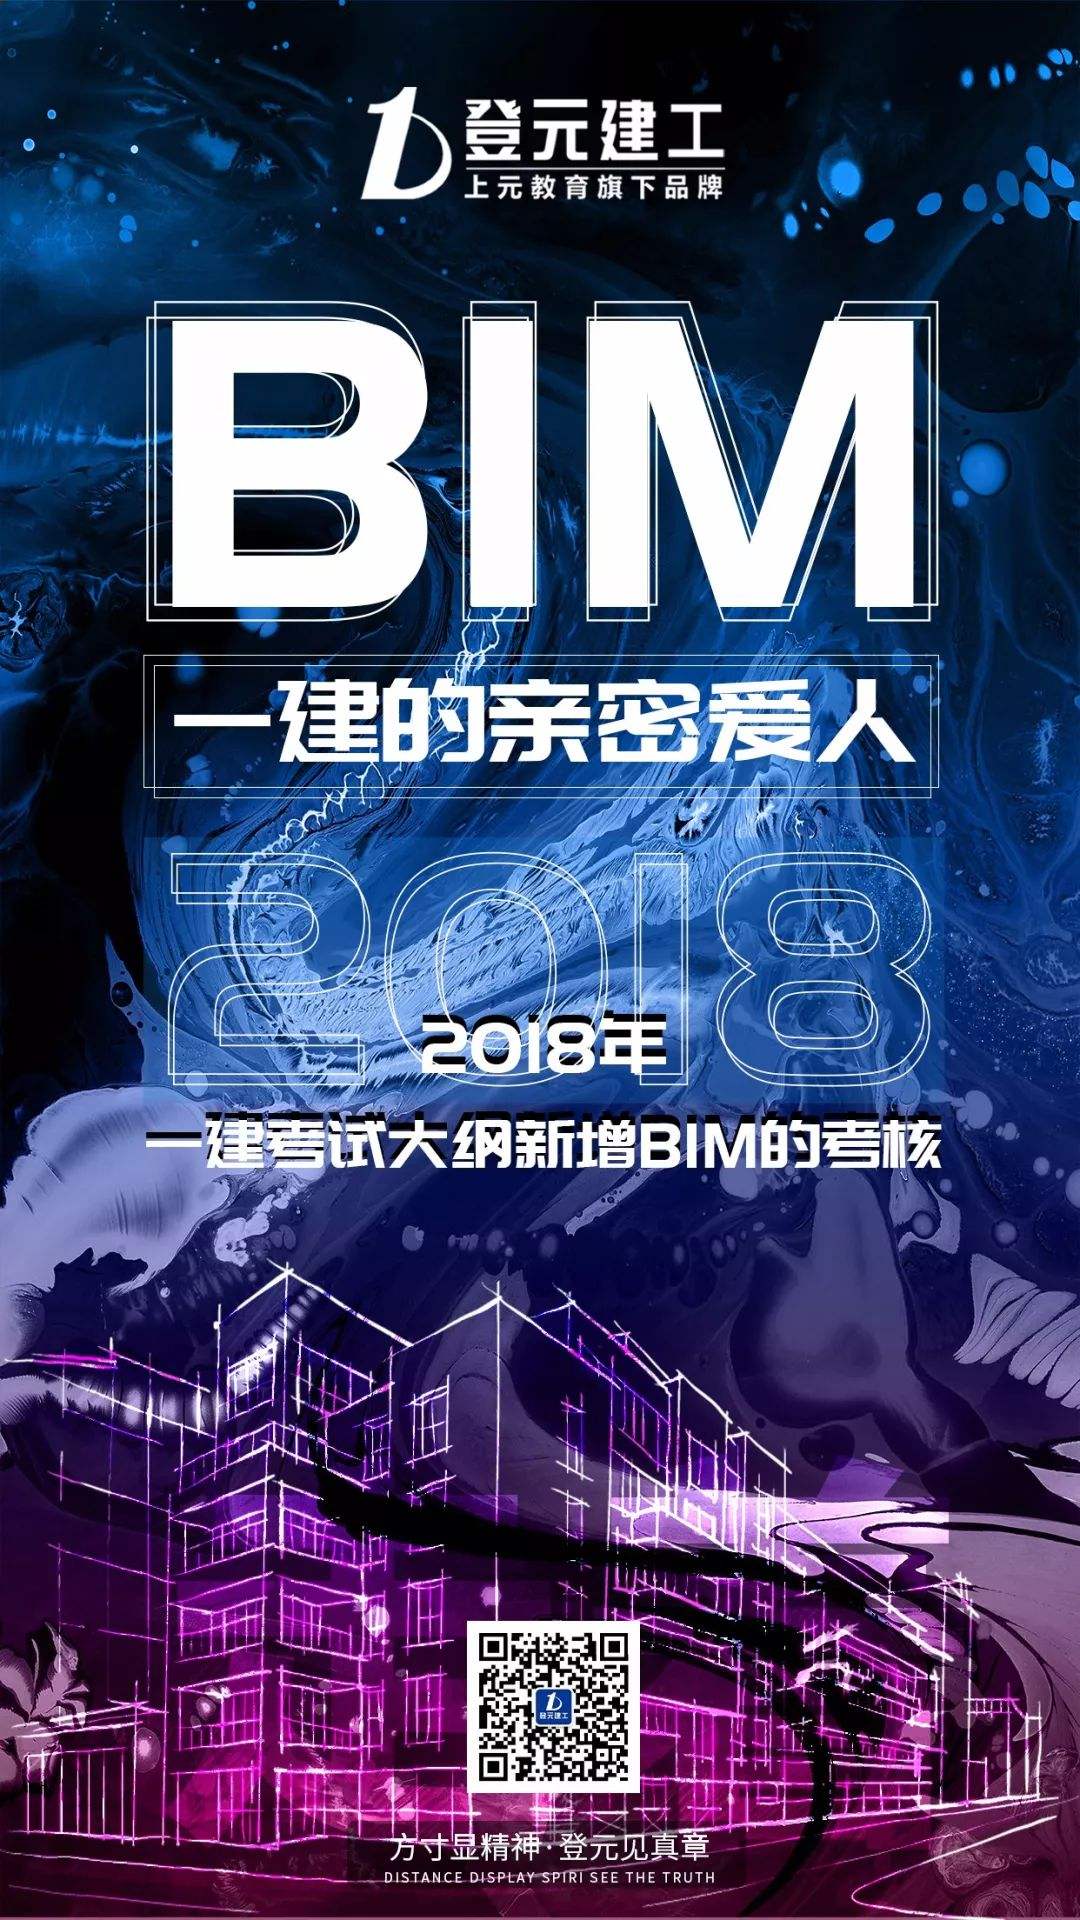 包含南京bim建模工程师招聘的词条  第1张